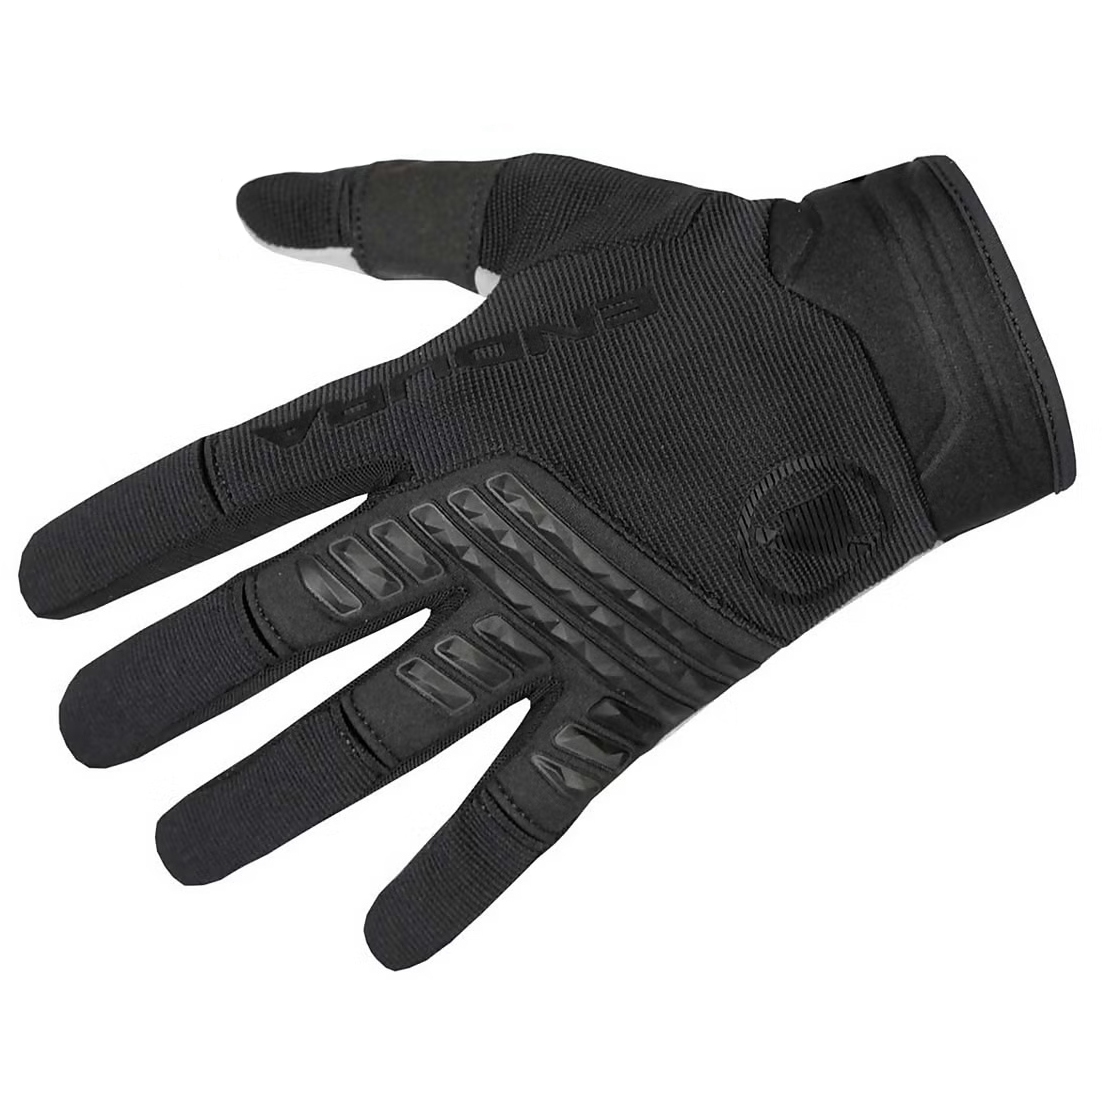 Productfoto van Endura SingleTrack Handschoenen - zwart